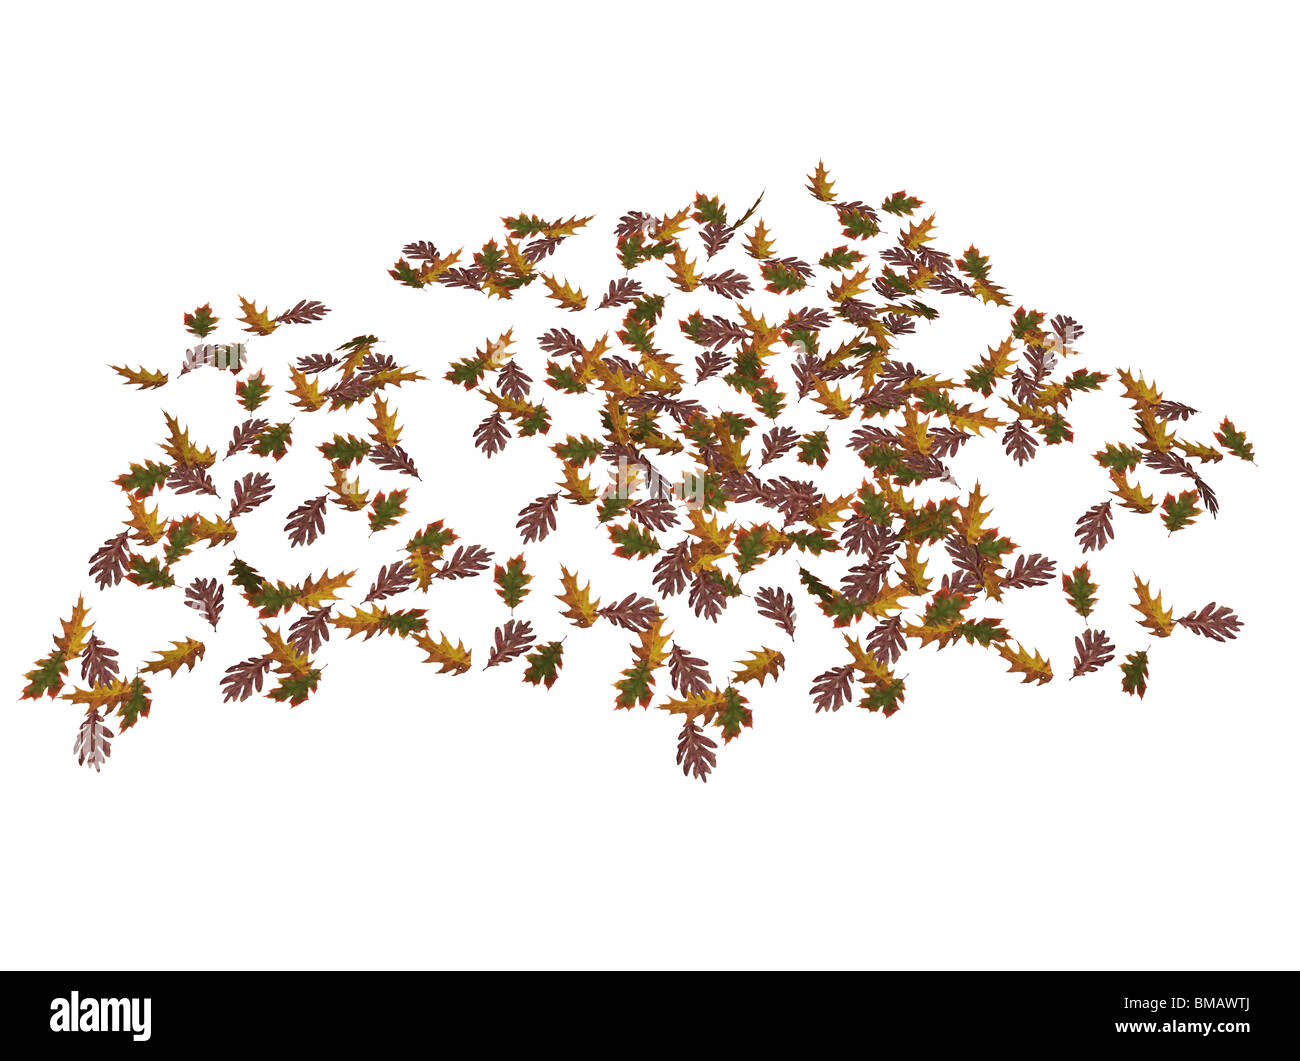 Illustrazione di alcuni quercia foglie, isolata contro uno sfondo bianco Foto Stock